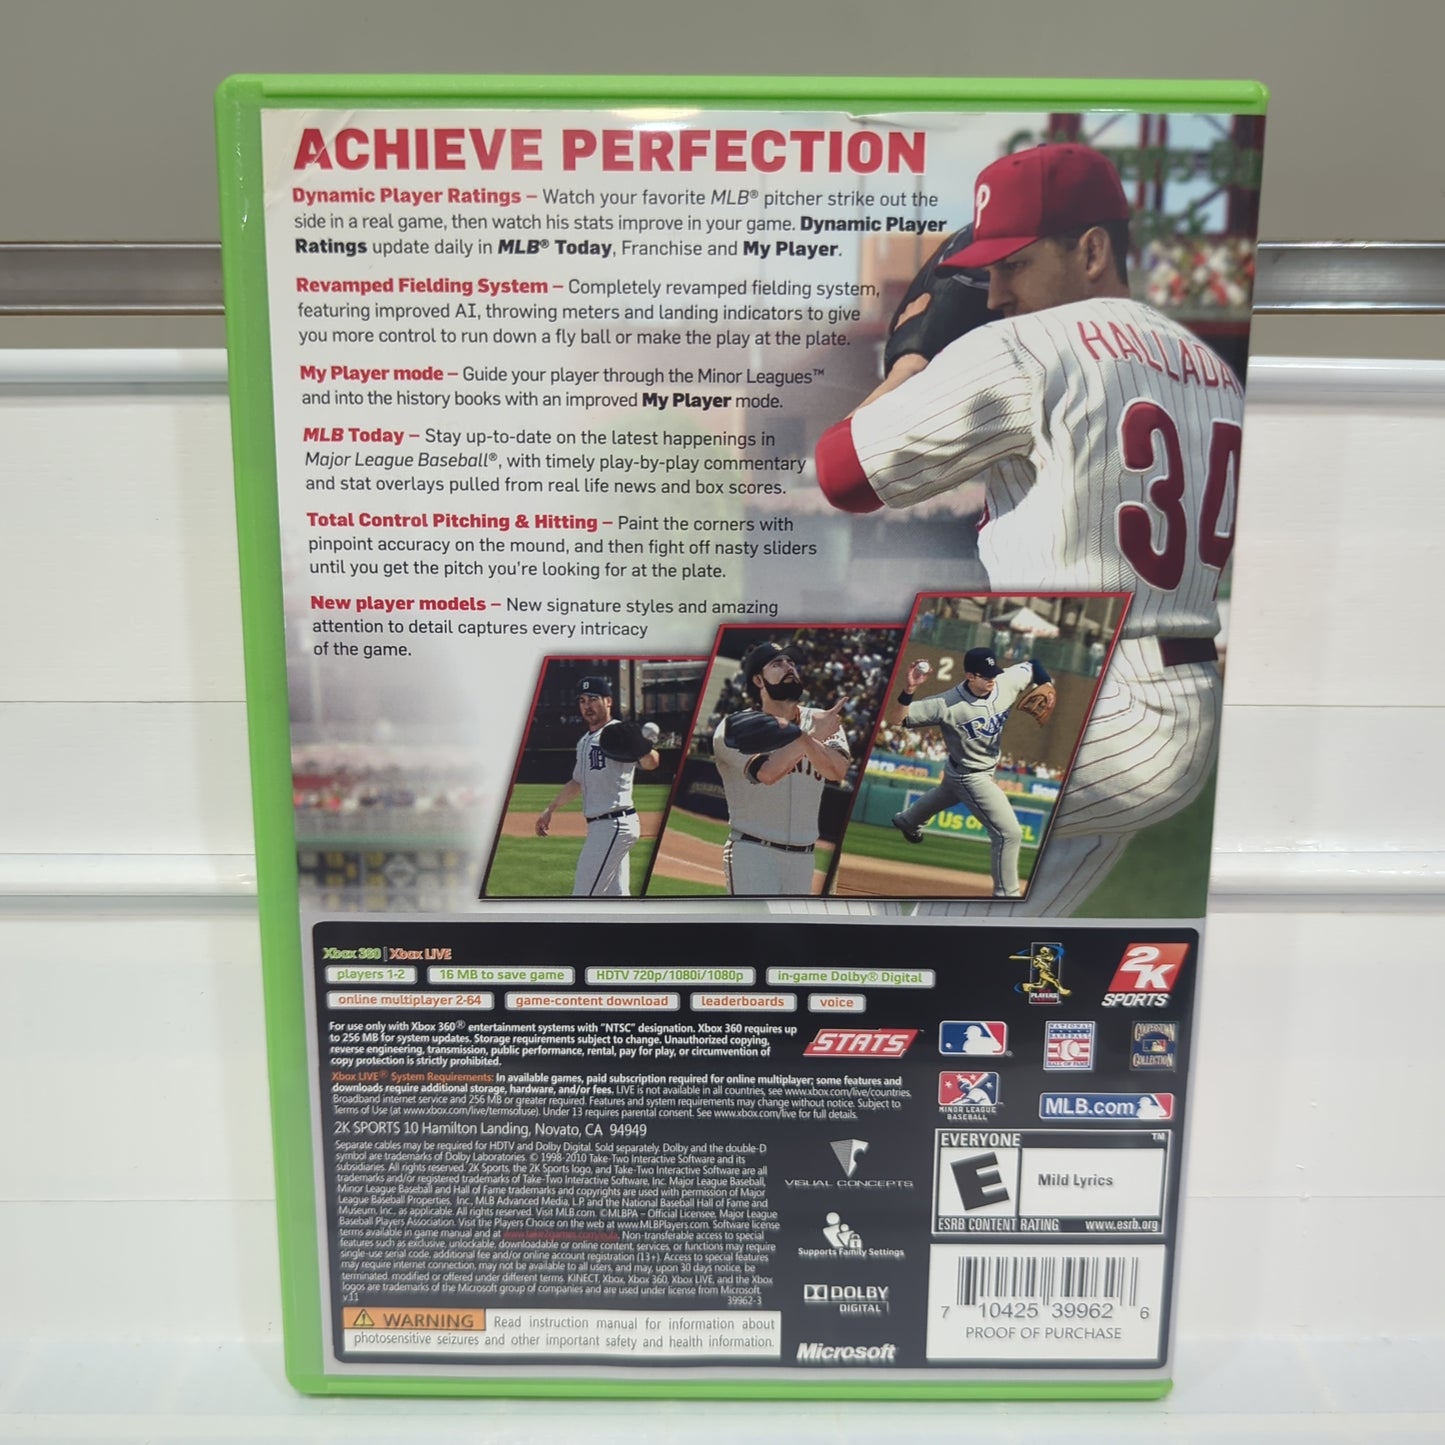 Major League Baseball 2K11 - Xbox 360